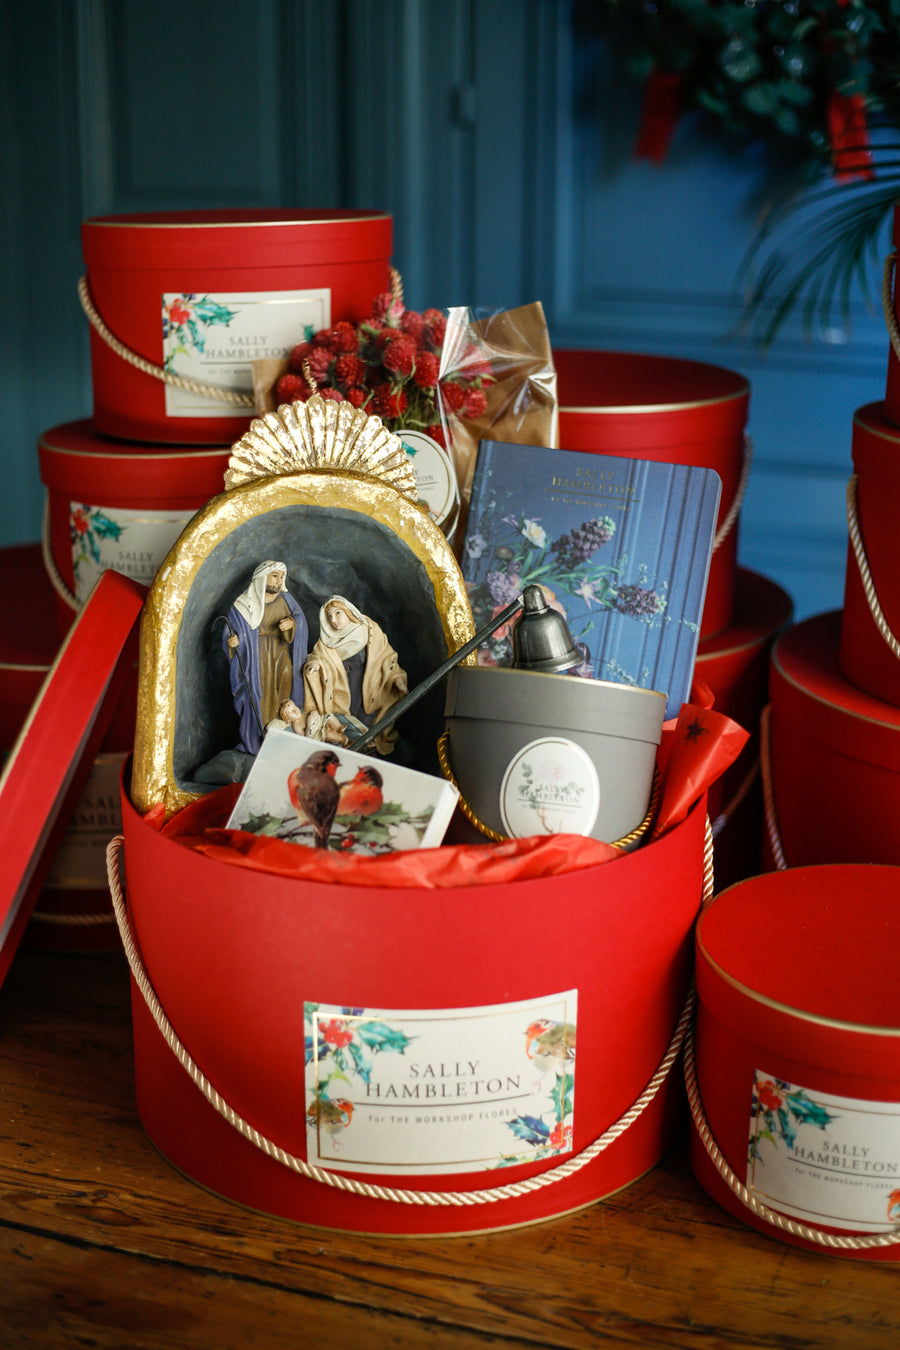  luxury-box-sombrerera-roja-velas-nacimiento-flores-secas-navidad-regalo-sally-hambleton-08